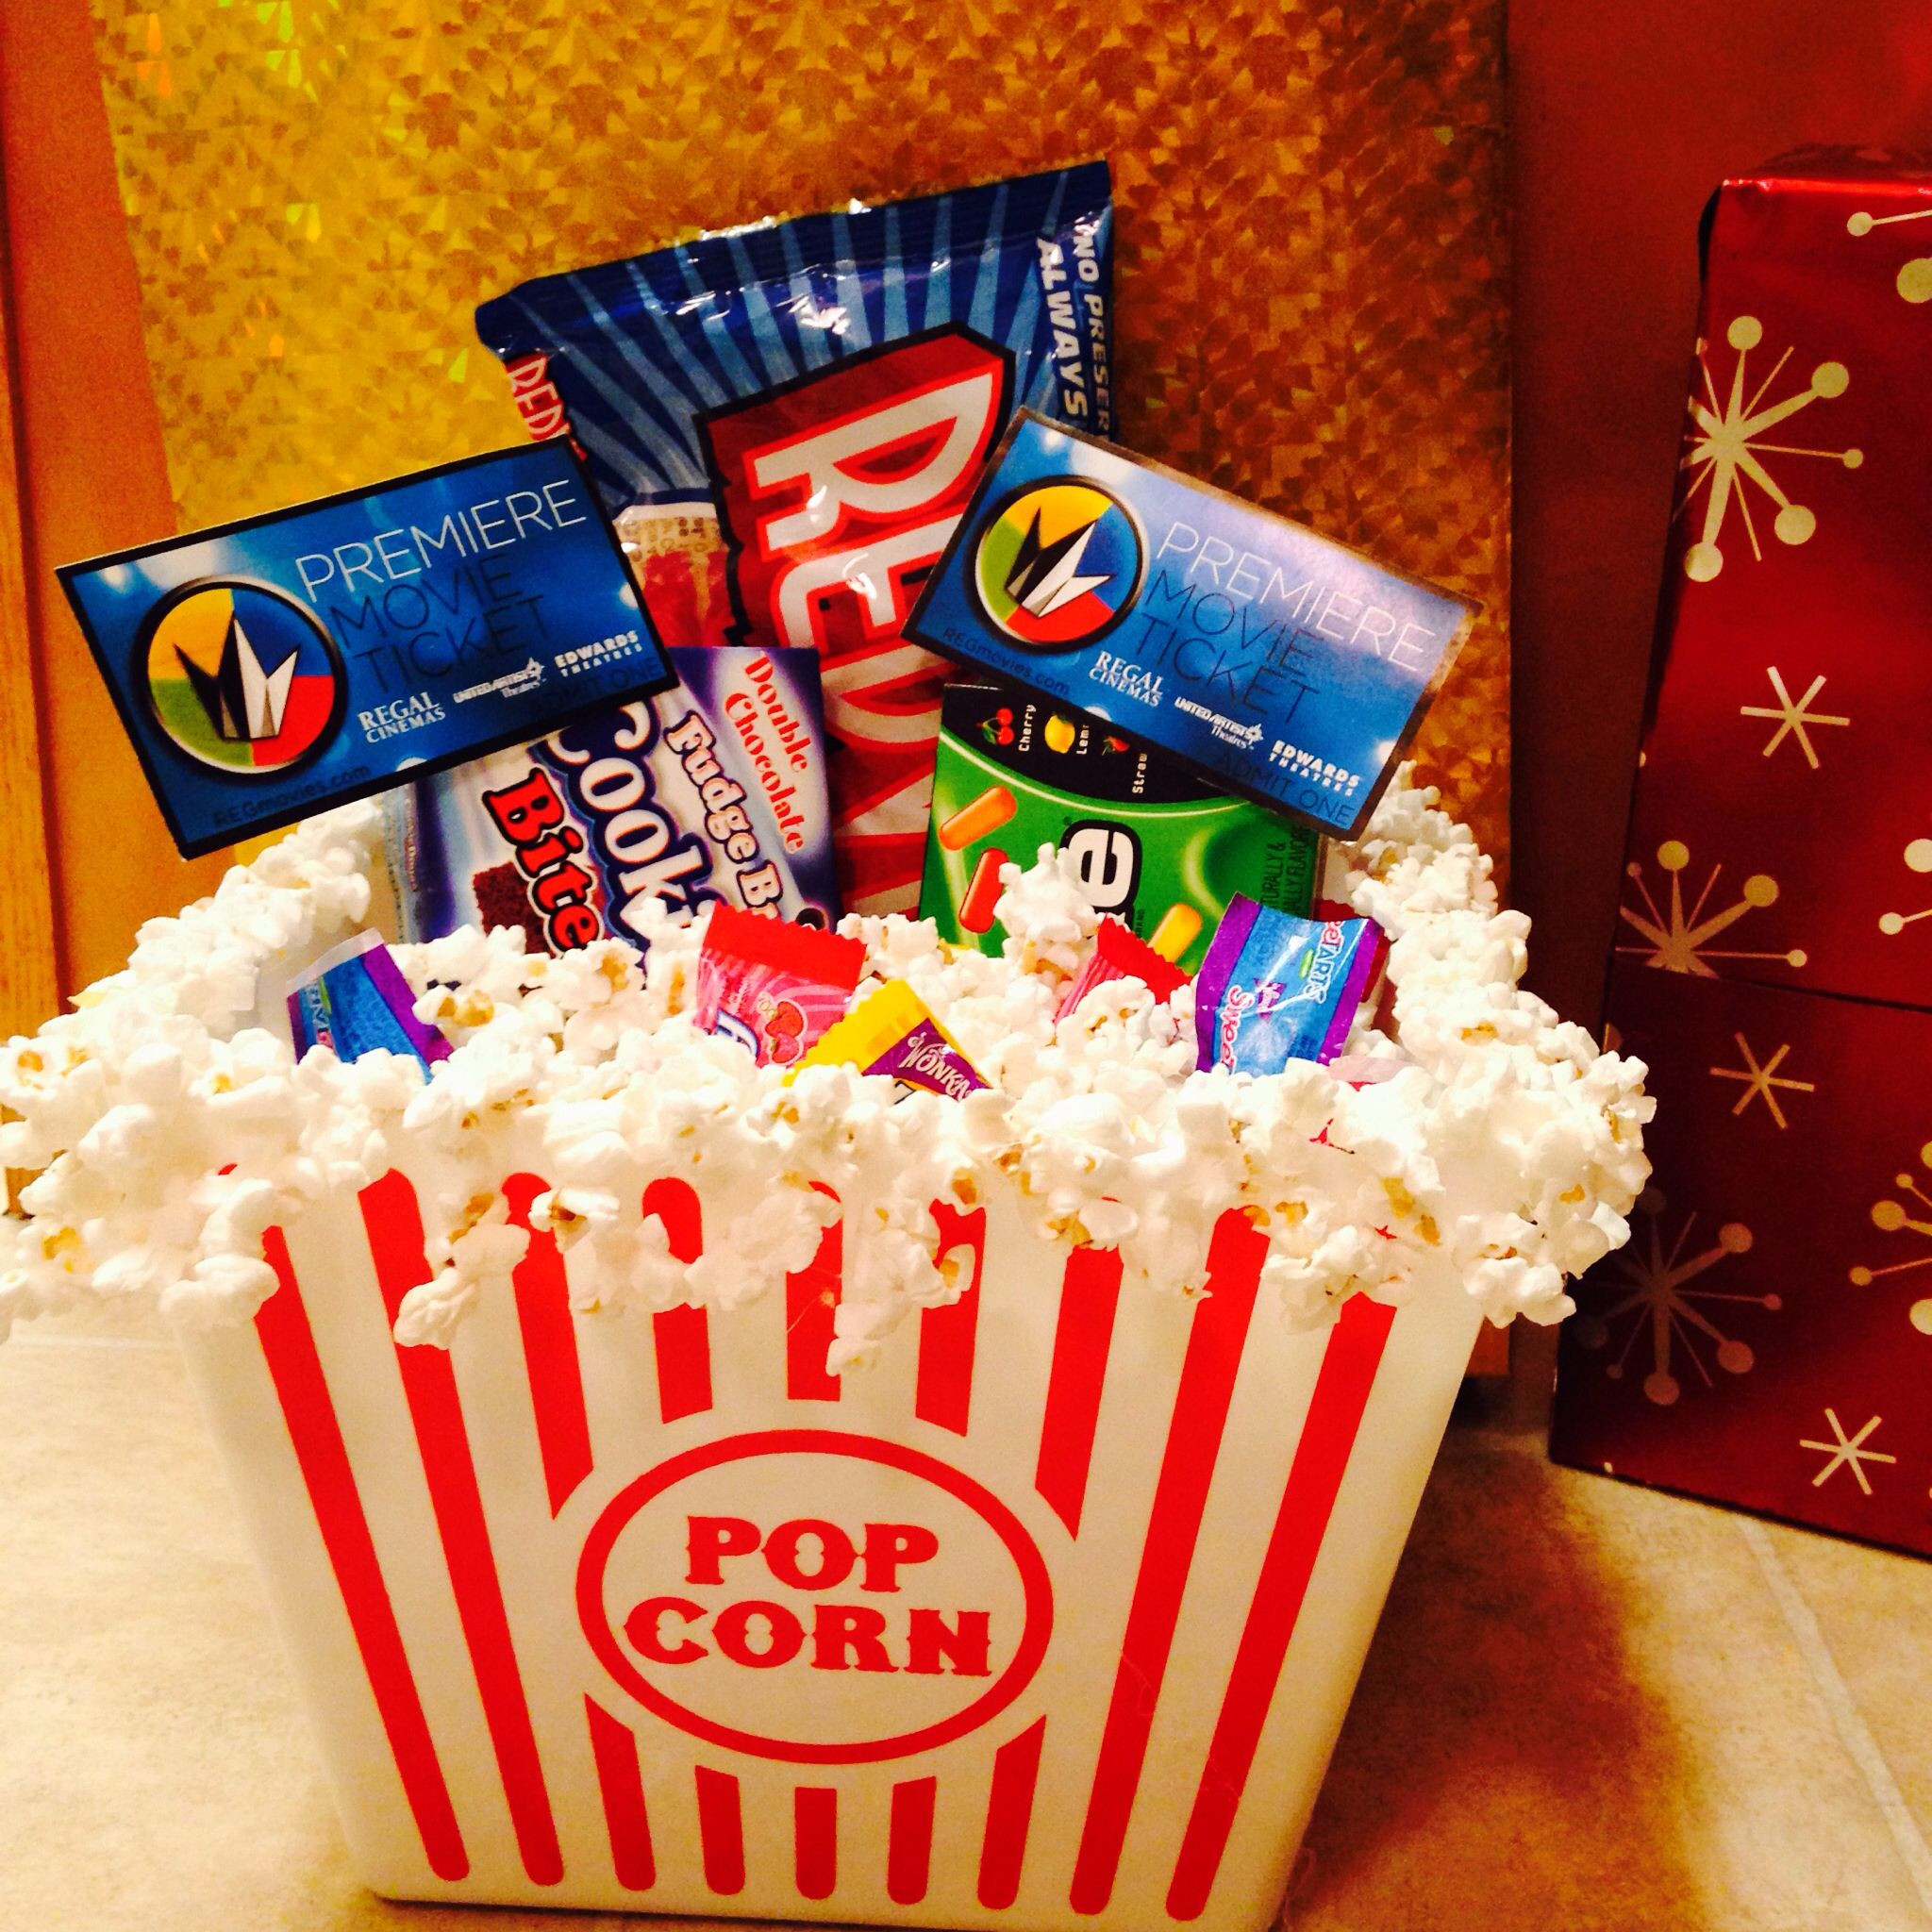 Movie Ticket Gift Basket Ideas
 Movie t basket Popcorn bucket with popcorn hot glued